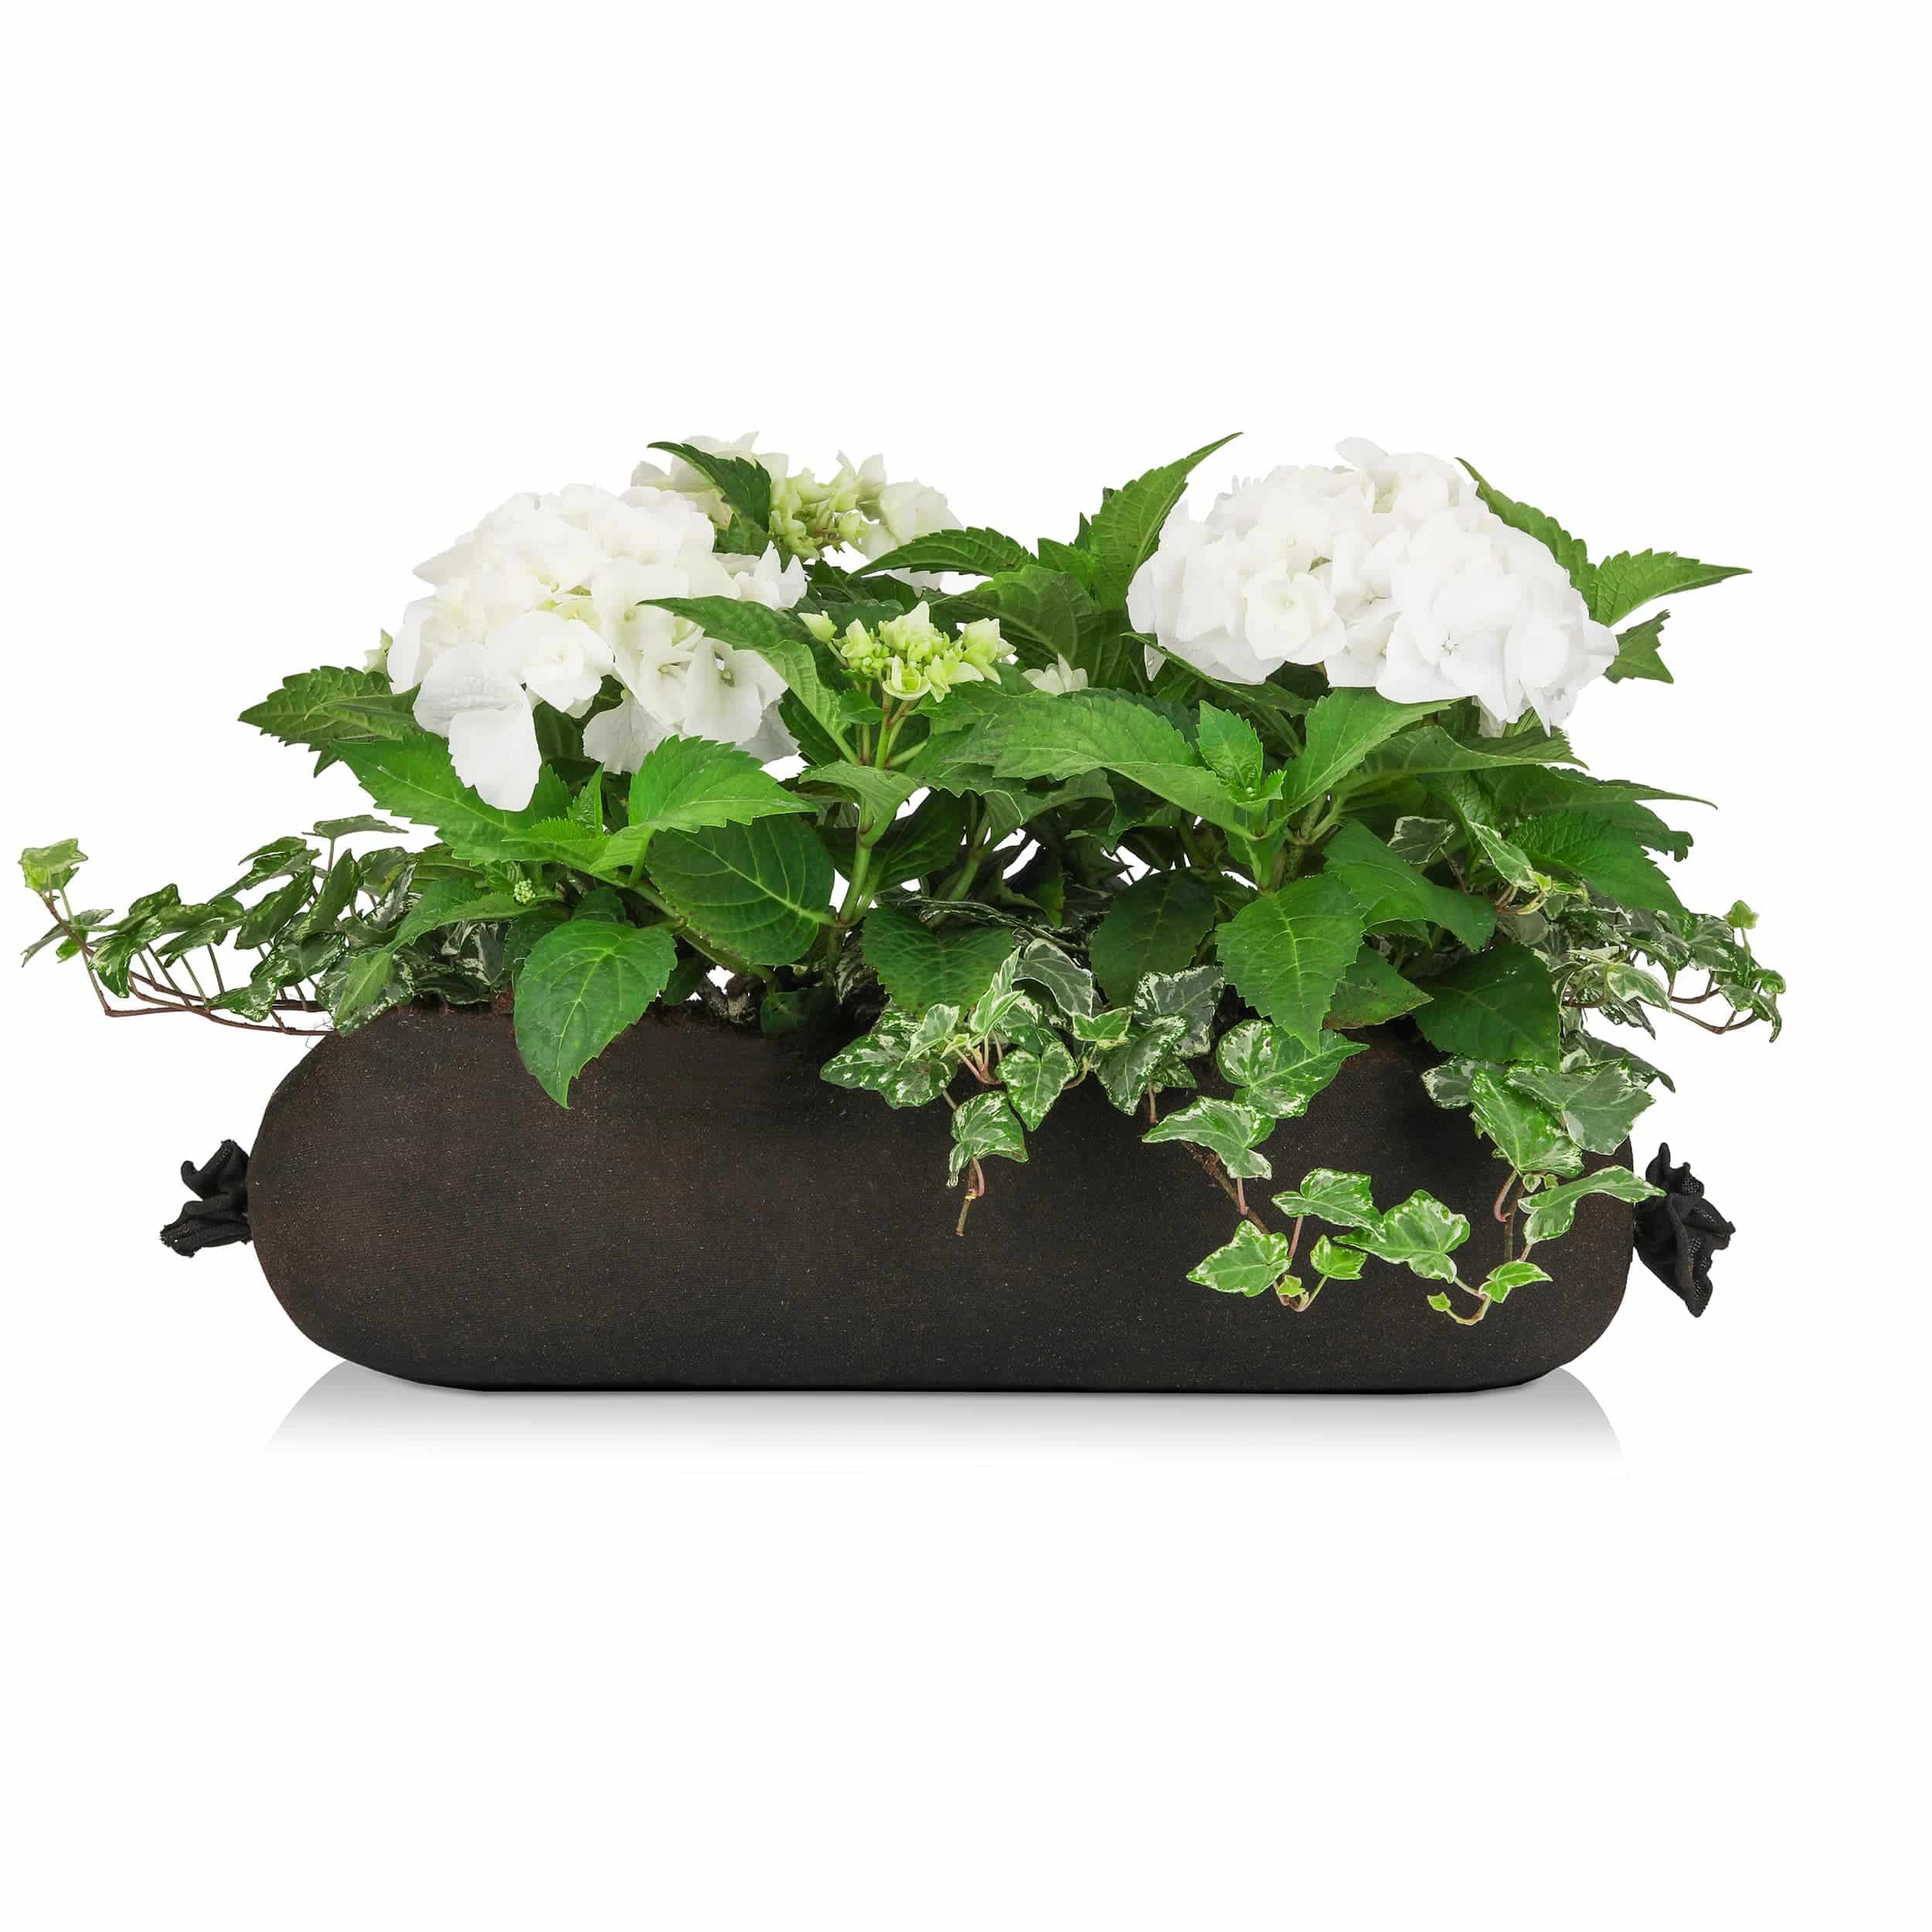 Hortensien-Bag 'Schattenkönigin' 50 cm weiß/grün Halbschatten